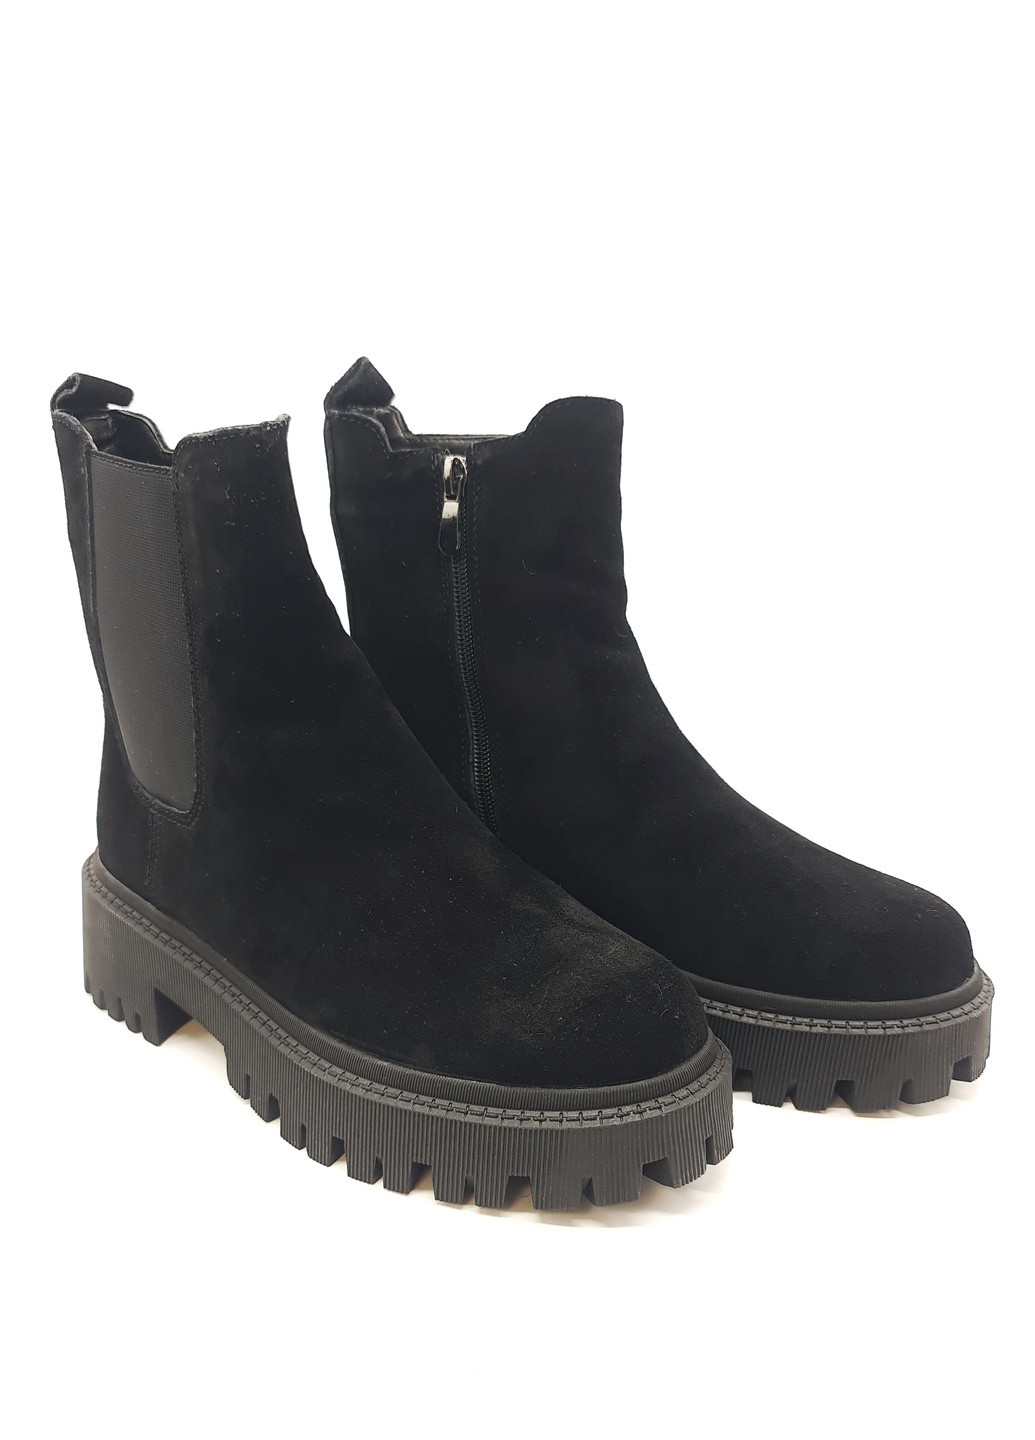 Осенние женские ботинки зимние черные замшевые ii-11-16 23 см(р) It is